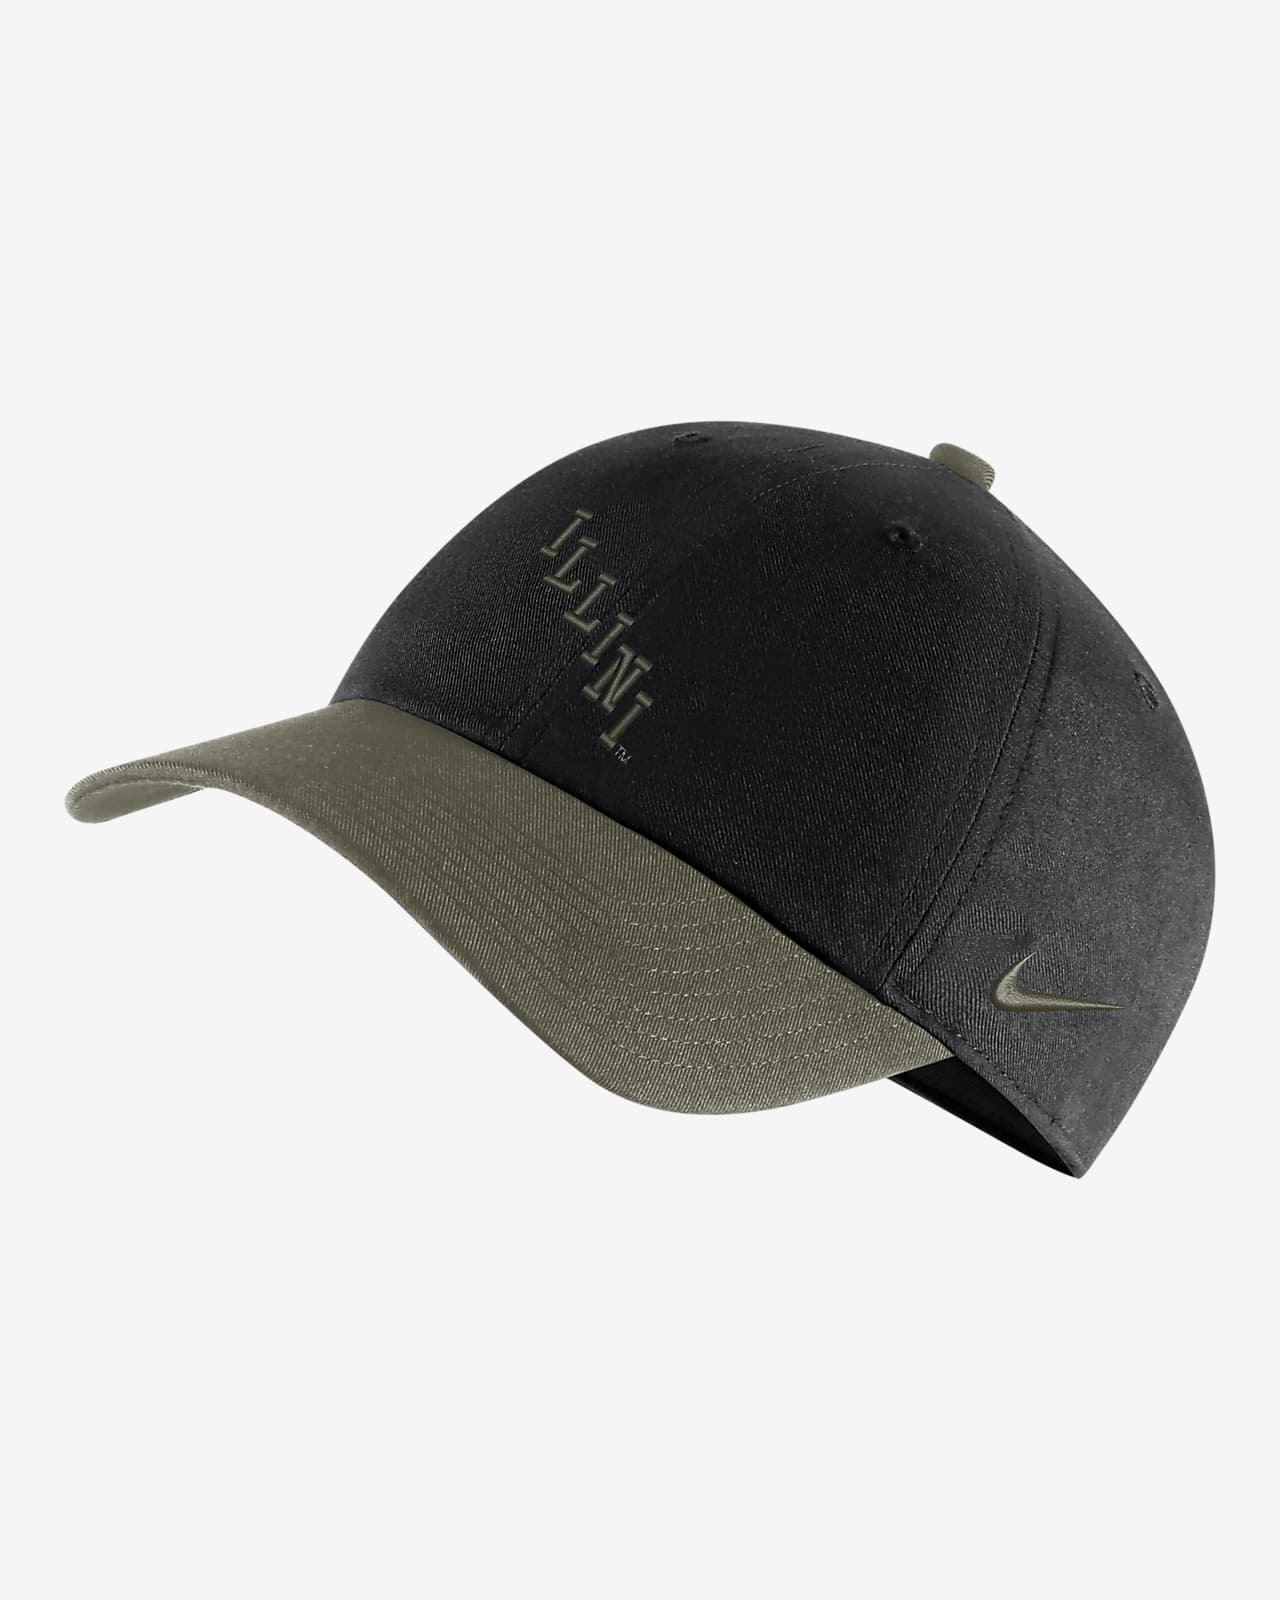 Illinois Heritage86 Nike College Hat